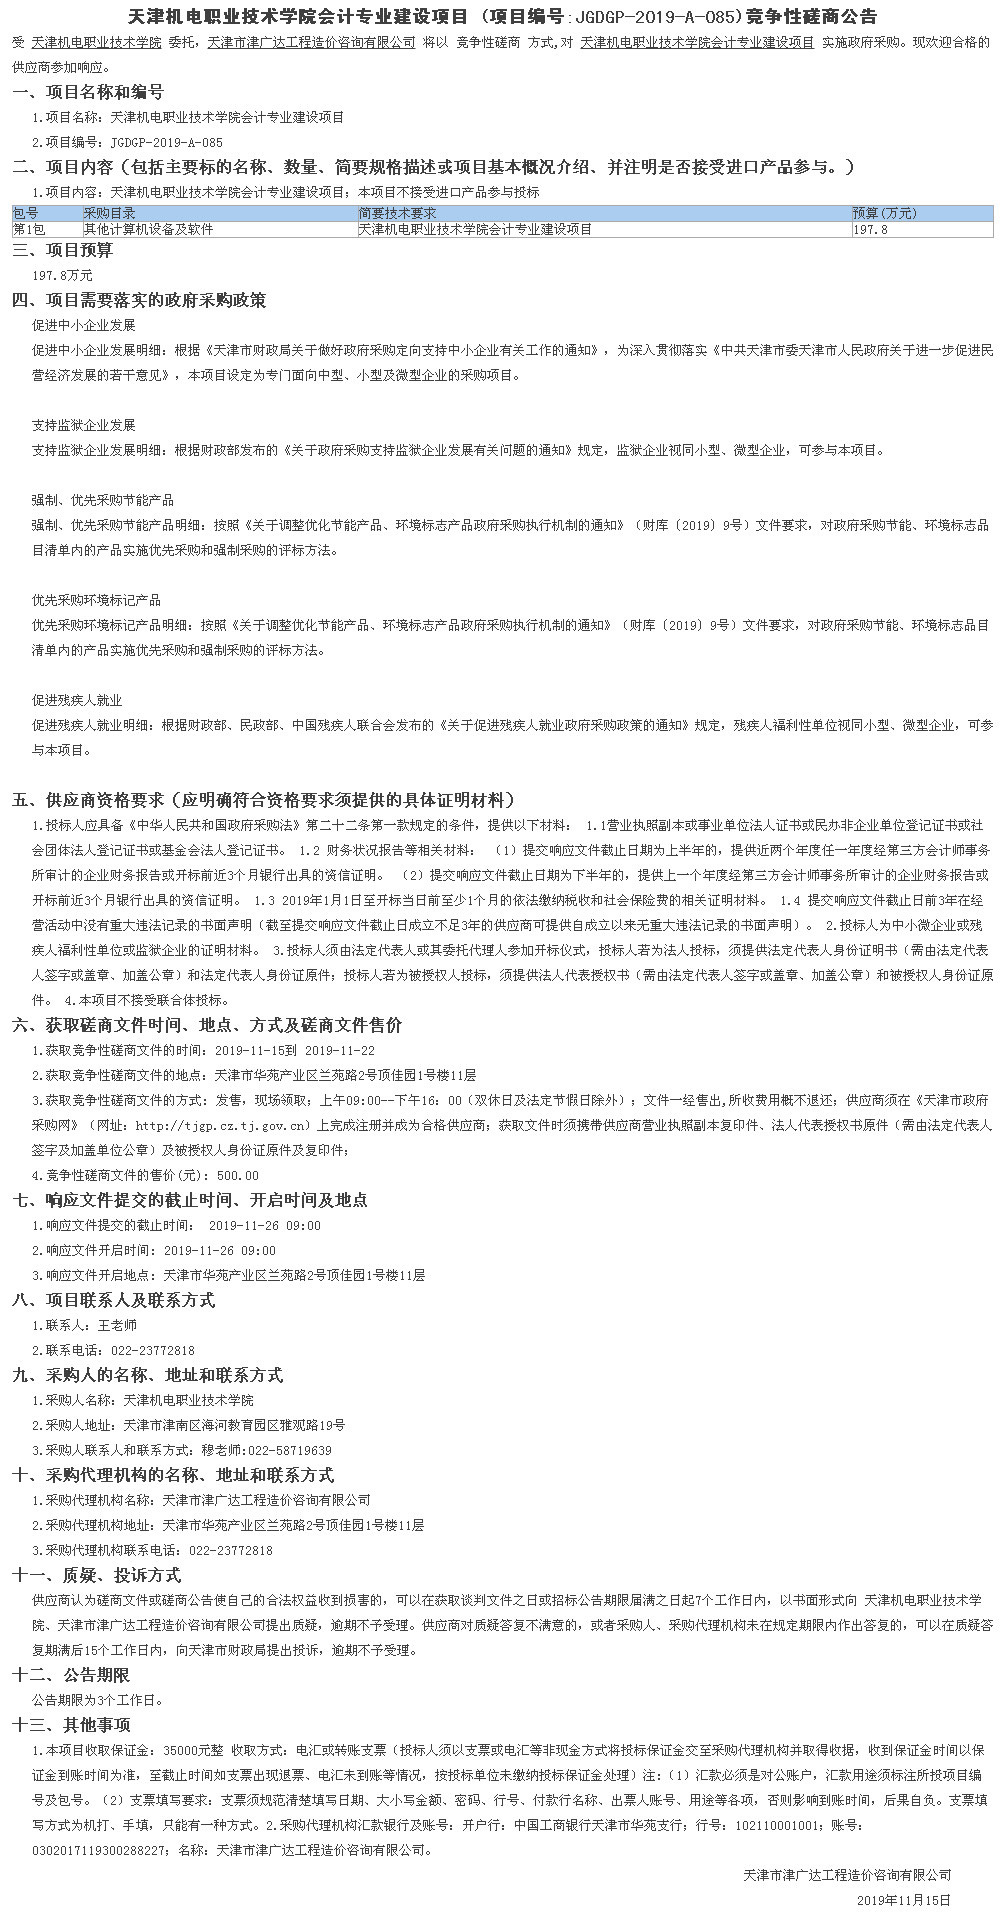 天津机电职业技术学院会计专业建设项目(图1)